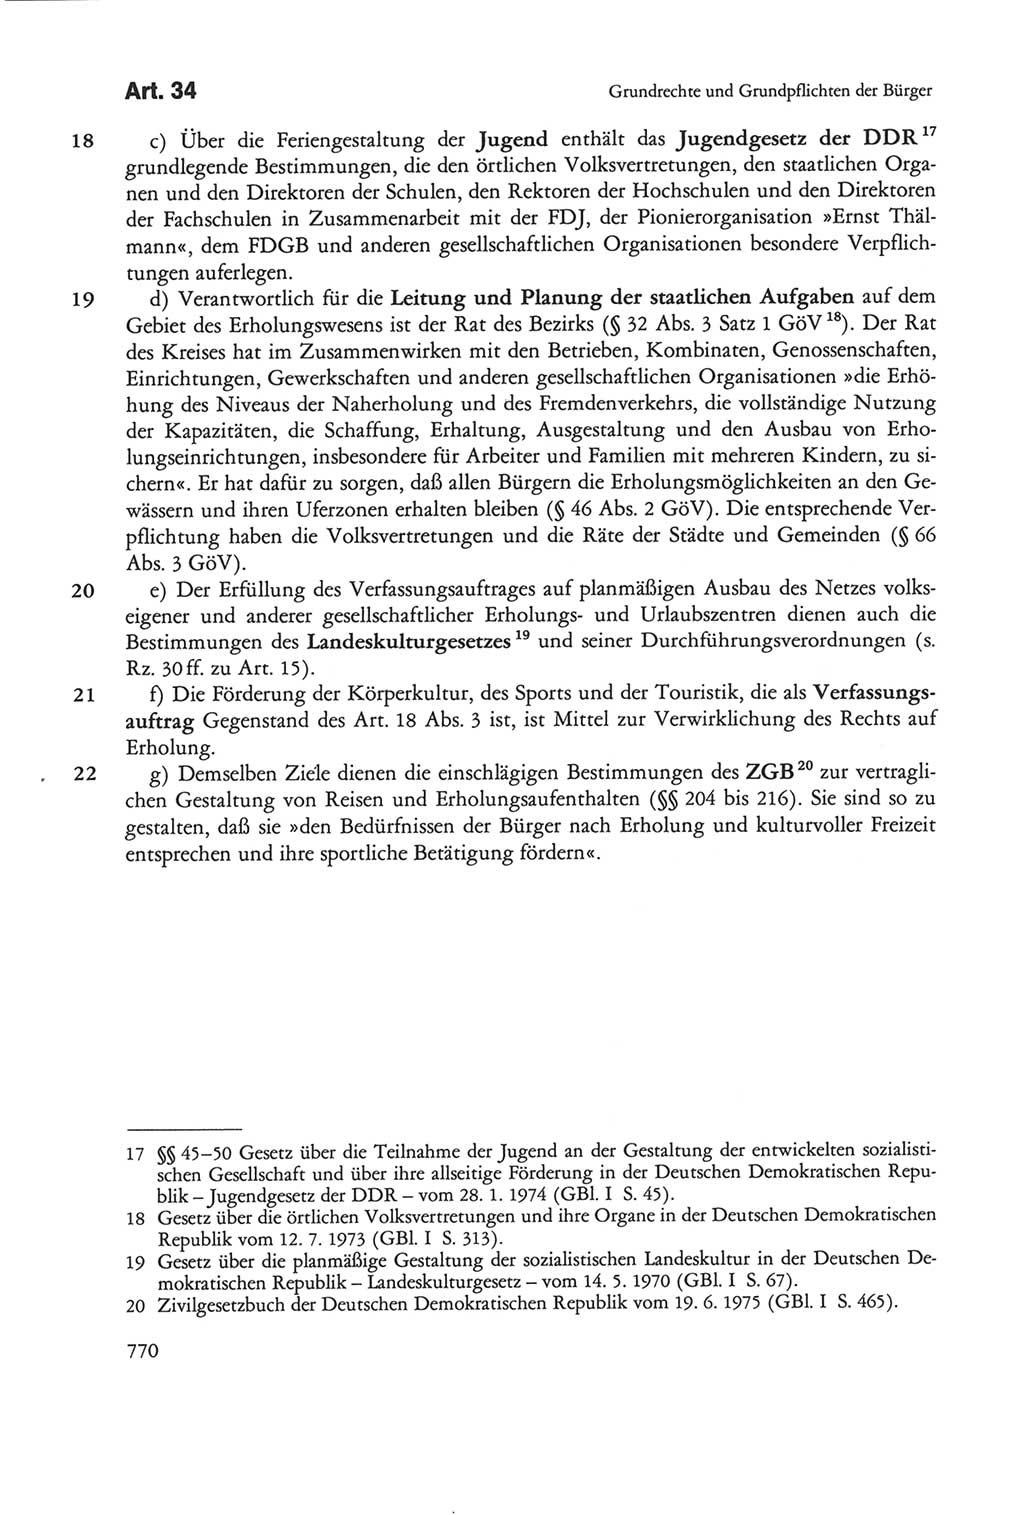 Die sozialistische Verfassung der Deutschen Demokratischen Republik (DDR), Kommentar mit einem Nachtrag 1997, Seite 770 (Soz. Verf. DDR Komm. Nachtr. 1997, S. 770)